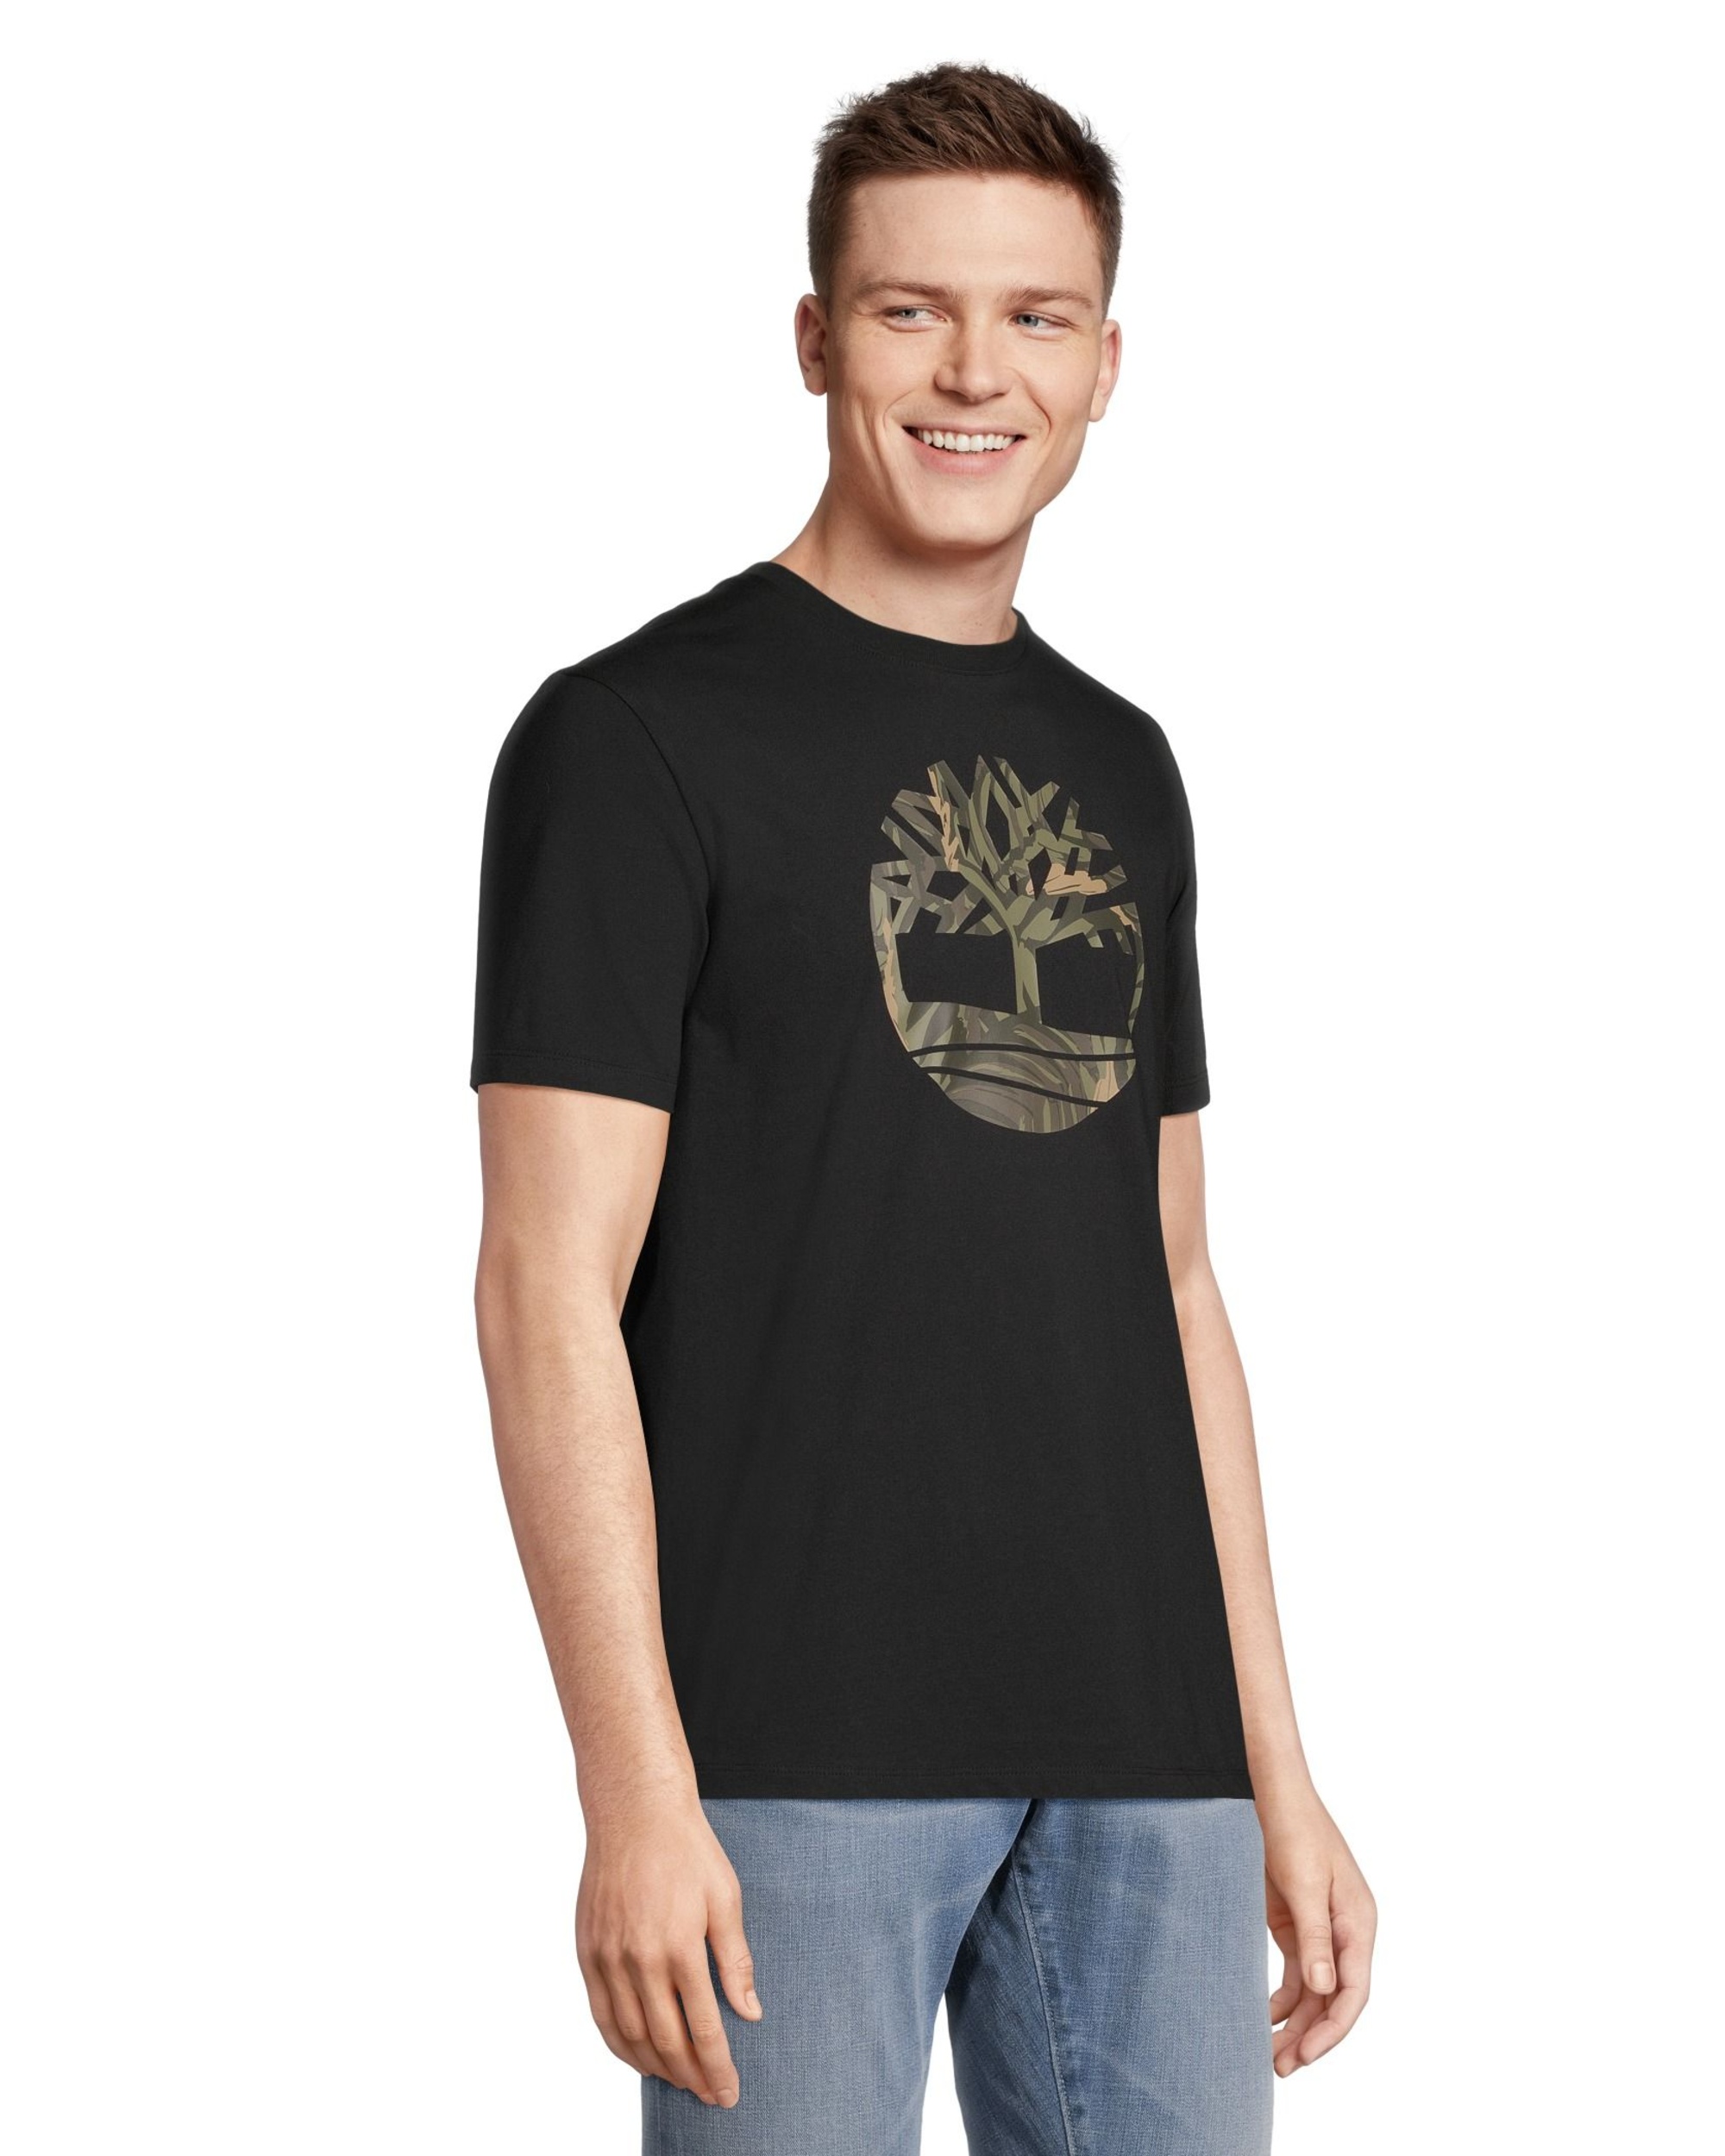 Timberland Men's Tree Camo Crewneck Cotton T Shirt | Marks